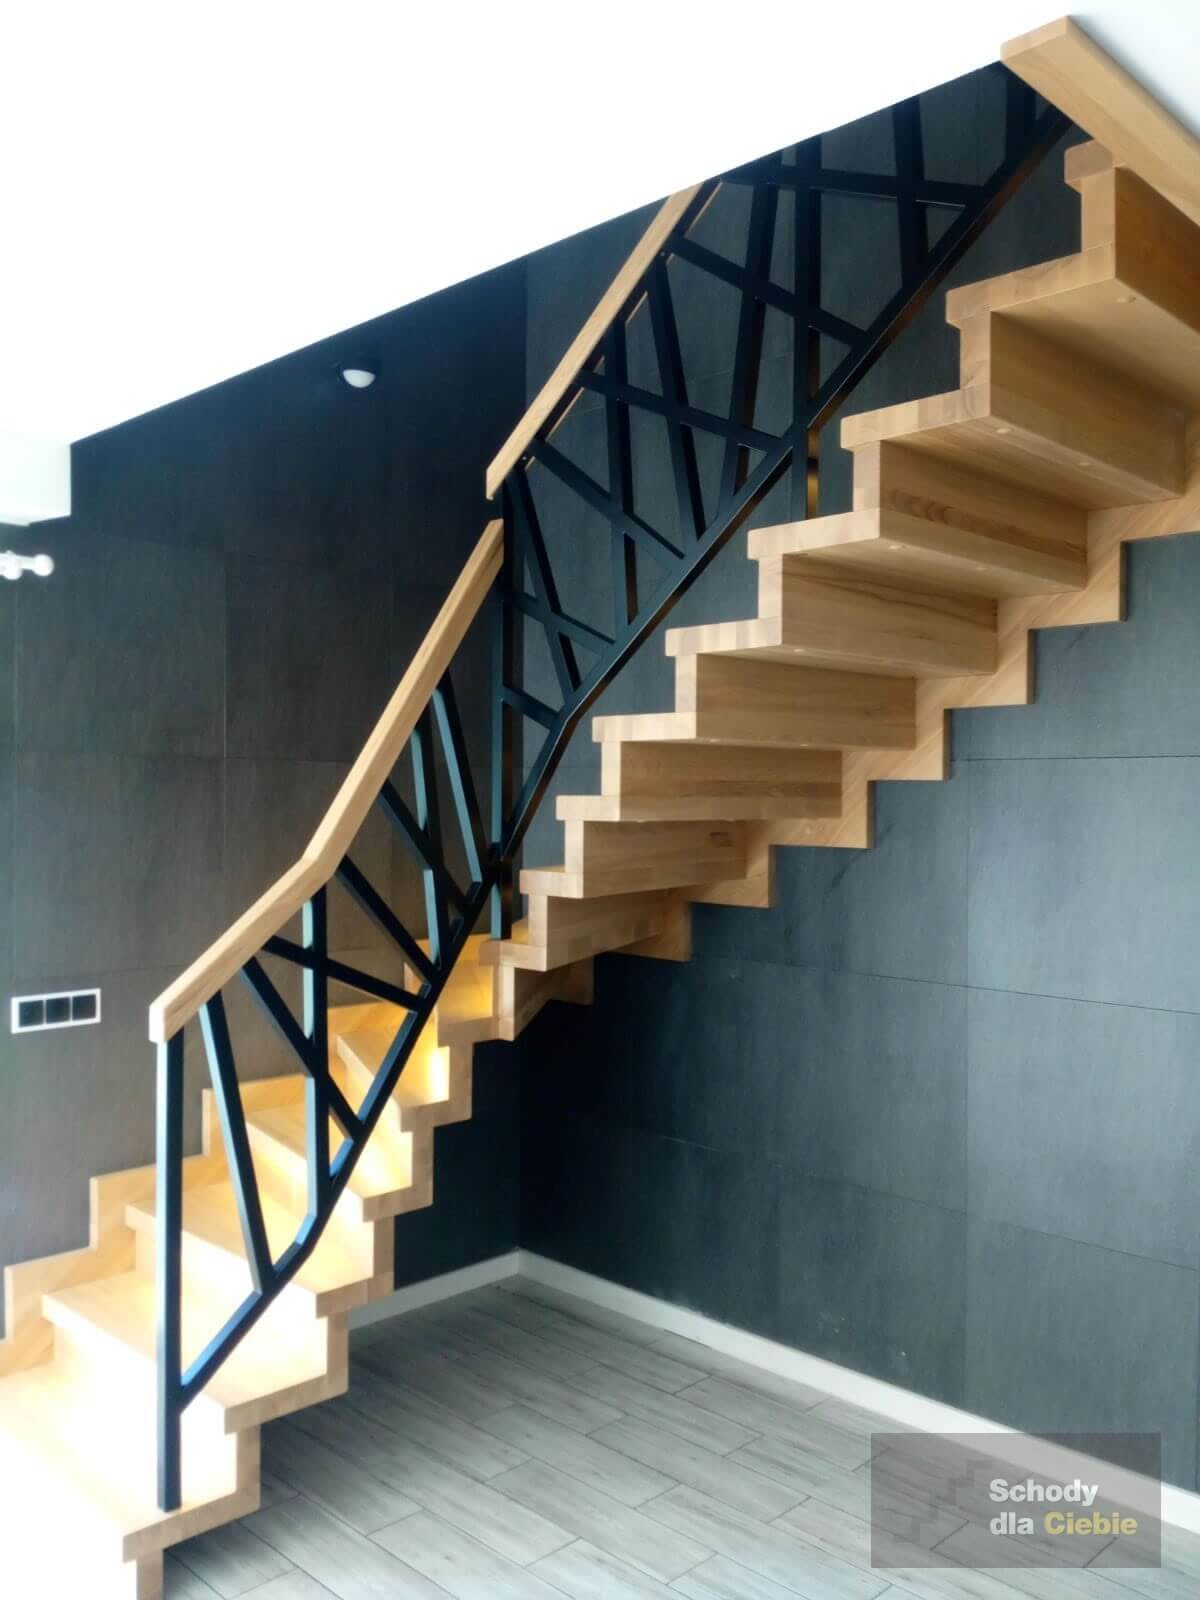 Ciekawa koncepcja schodów w stylu "jak dywanowe", uwagę przykuwa zwłaszcza malowana na czarno balust...